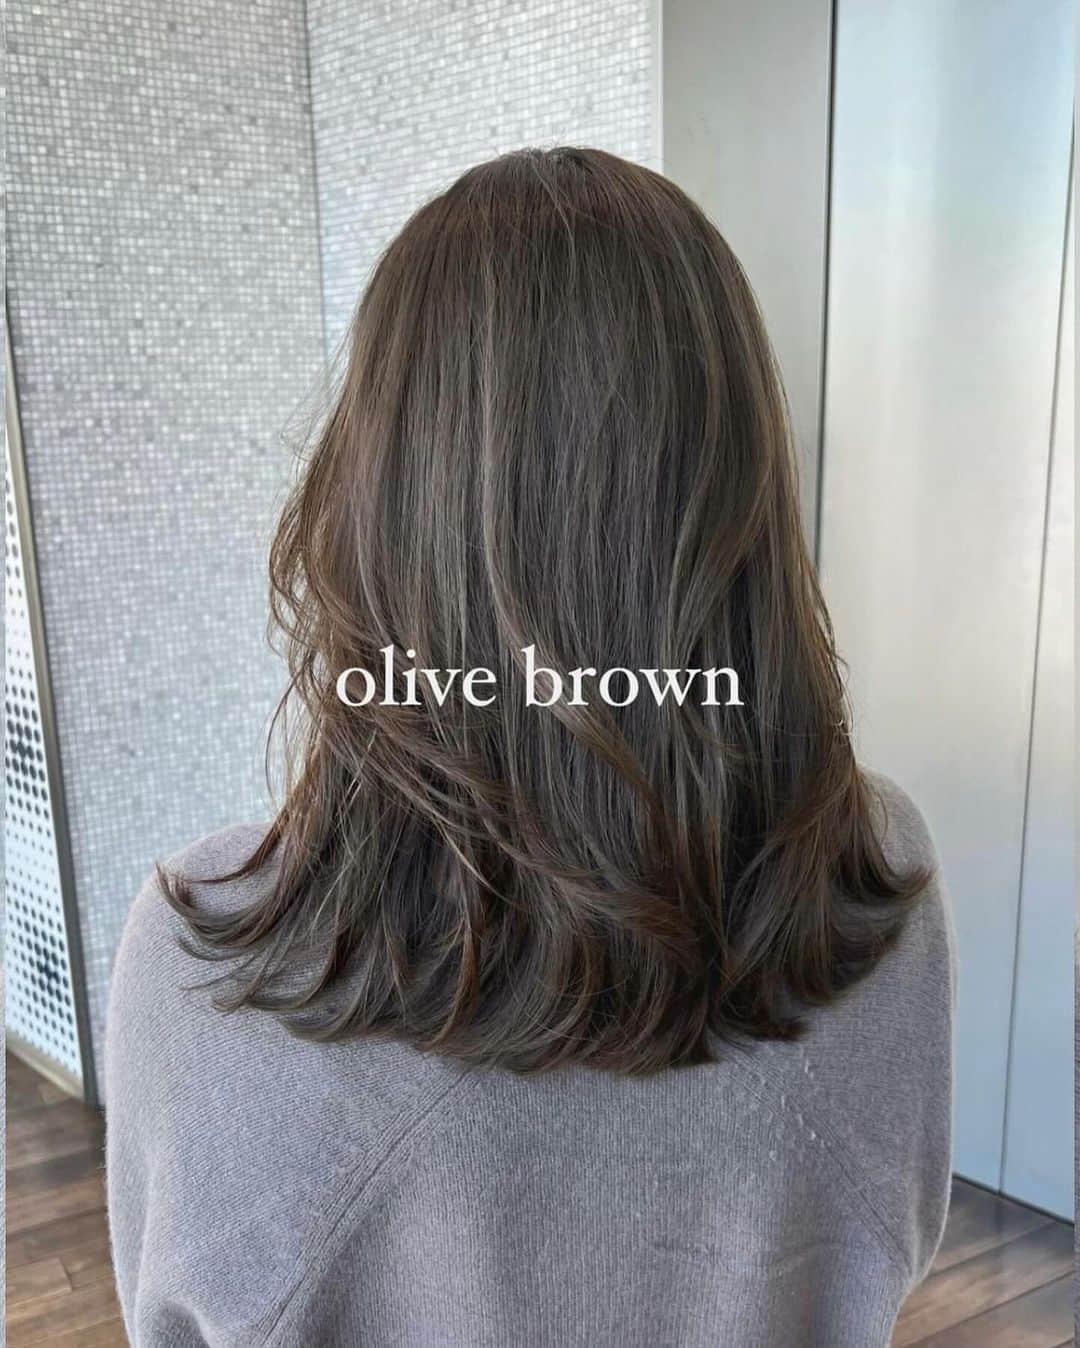 美容室ZACCのインスタグラム：「olive beige  カラーを繰り返しても、ダメージを感じない髪に🤍  低ダメージで髪に負担をかけないように 柔らかい仕上がりに🤍  綺麗な理想のヘアになりましょう🪞  可愛いくびれヘア ふんわりレイヤーヘア 綺麗め毛流れヘア、お任せください🤍  保存してカウンセリング時にお見せください🌱 ⁡ お気軽にご相談ください✂︎ stylist by ZACC vie @riiiiharu36   ーーーーーーーーーーーーーーーーーーーーーー 【ご新規様限定📣】 ZACCホームページのweb予約にて初回10%off🌿 ✔︎ザック全店ご新規様（表参道、銀座） ✔︎平日のみ対象 ✔︎カット、前髪カットのみ対象外  【price】 カット¥8,250→¥7,425 カット+カラー¥18,150→¥16,335 カット+カラー+トリートメント→¥25,850→¥23,265 その他全メニュー対象です🗣 （カットのみ、前髪カットのみ対象外） ーーーーーーーーーーーーーーーーーーーーーーーーーー 東京都港区北青山3-11-7 Aoビル4F 表参道駅B2出口　徒歩30秒 ☎︎03-5468-5882  #美容室#表参道#zacc#韓国風ヘア#韓国ヘア#レイヤーカット #レイヤースタイル #ミディアムヘア #くびれヘア #くびれミディ #くびれヘア #ヘアスタイル  #表参道美容室 #ザック #艶髪カラー#オリーブグレージュ #オリーブベージュ」